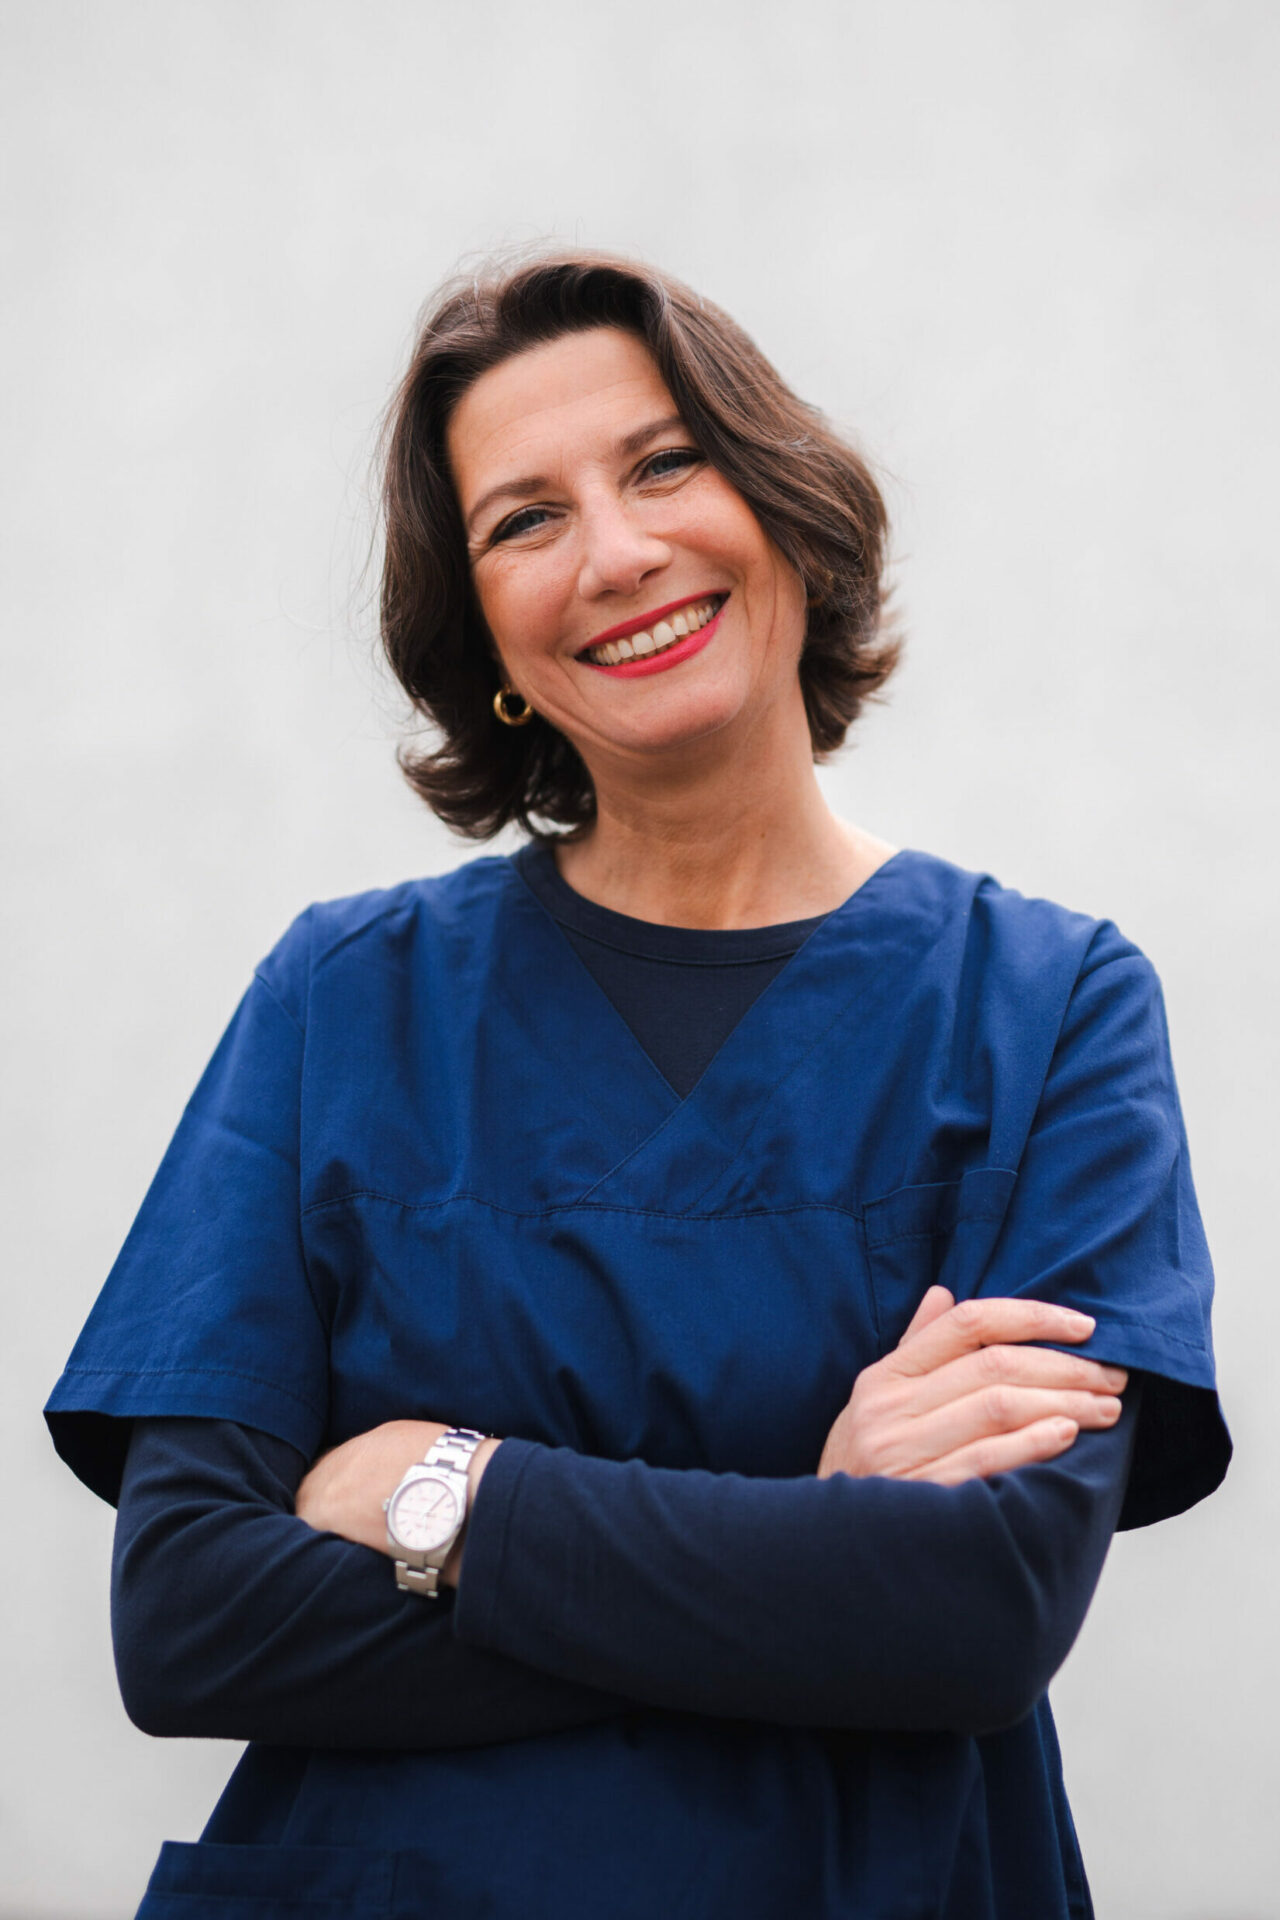 Dr. Elina Grodtmann